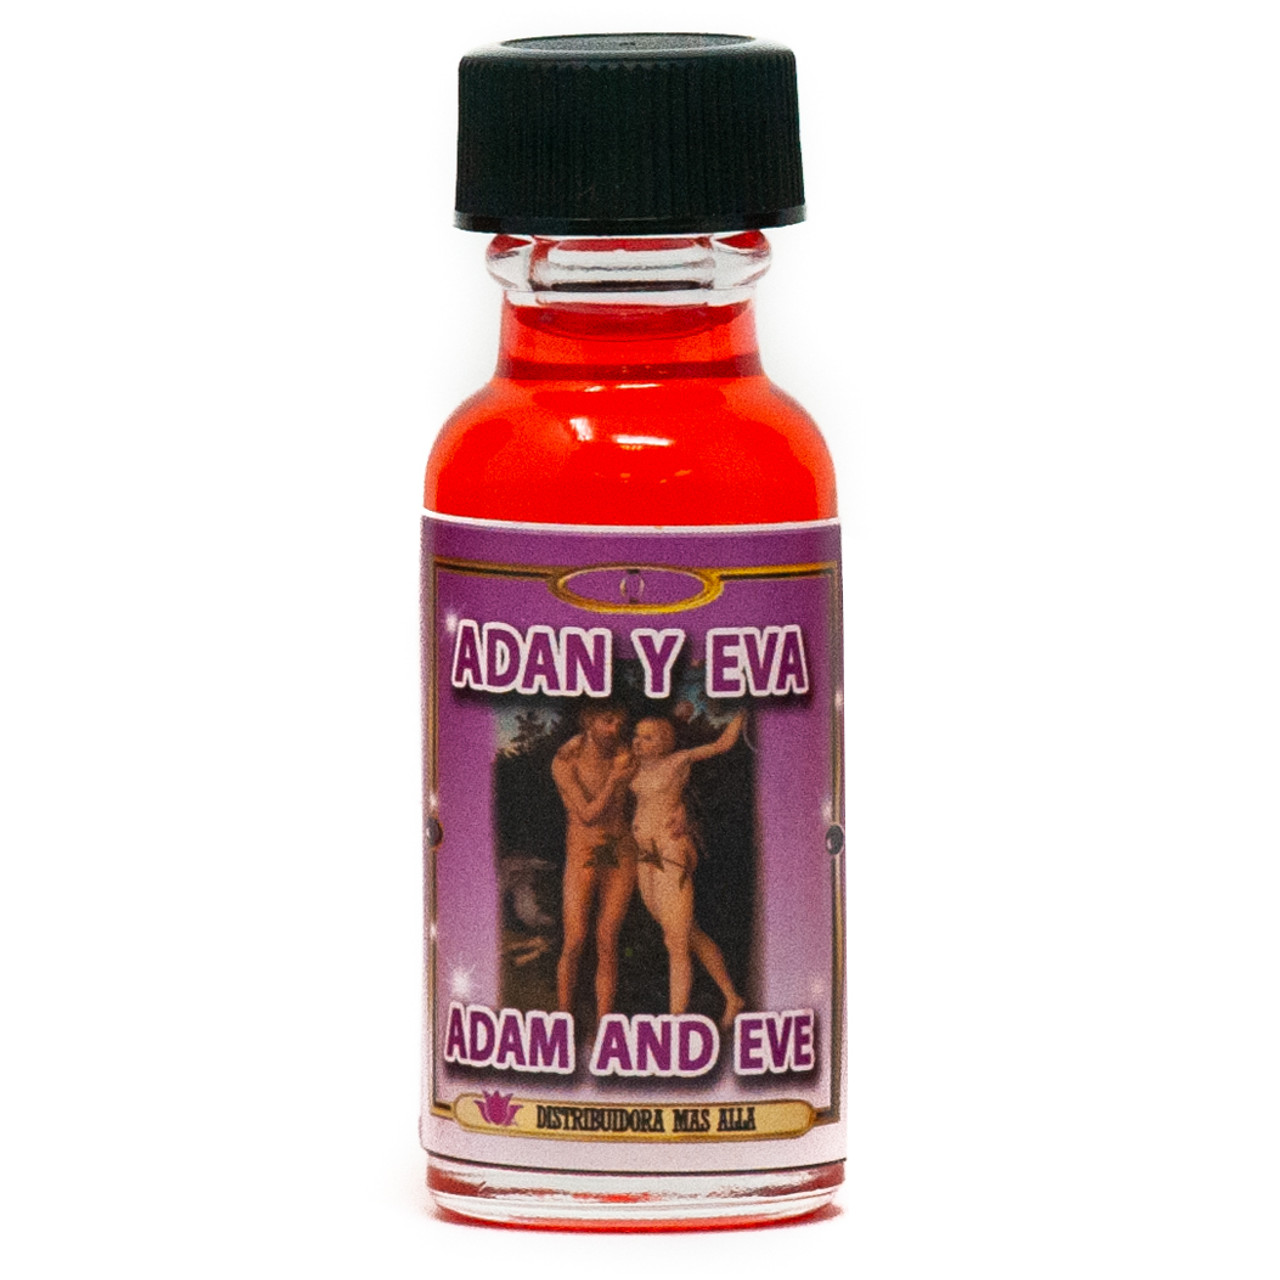 Aceite Adan Y Eva - Ritual Oil - Wholesale